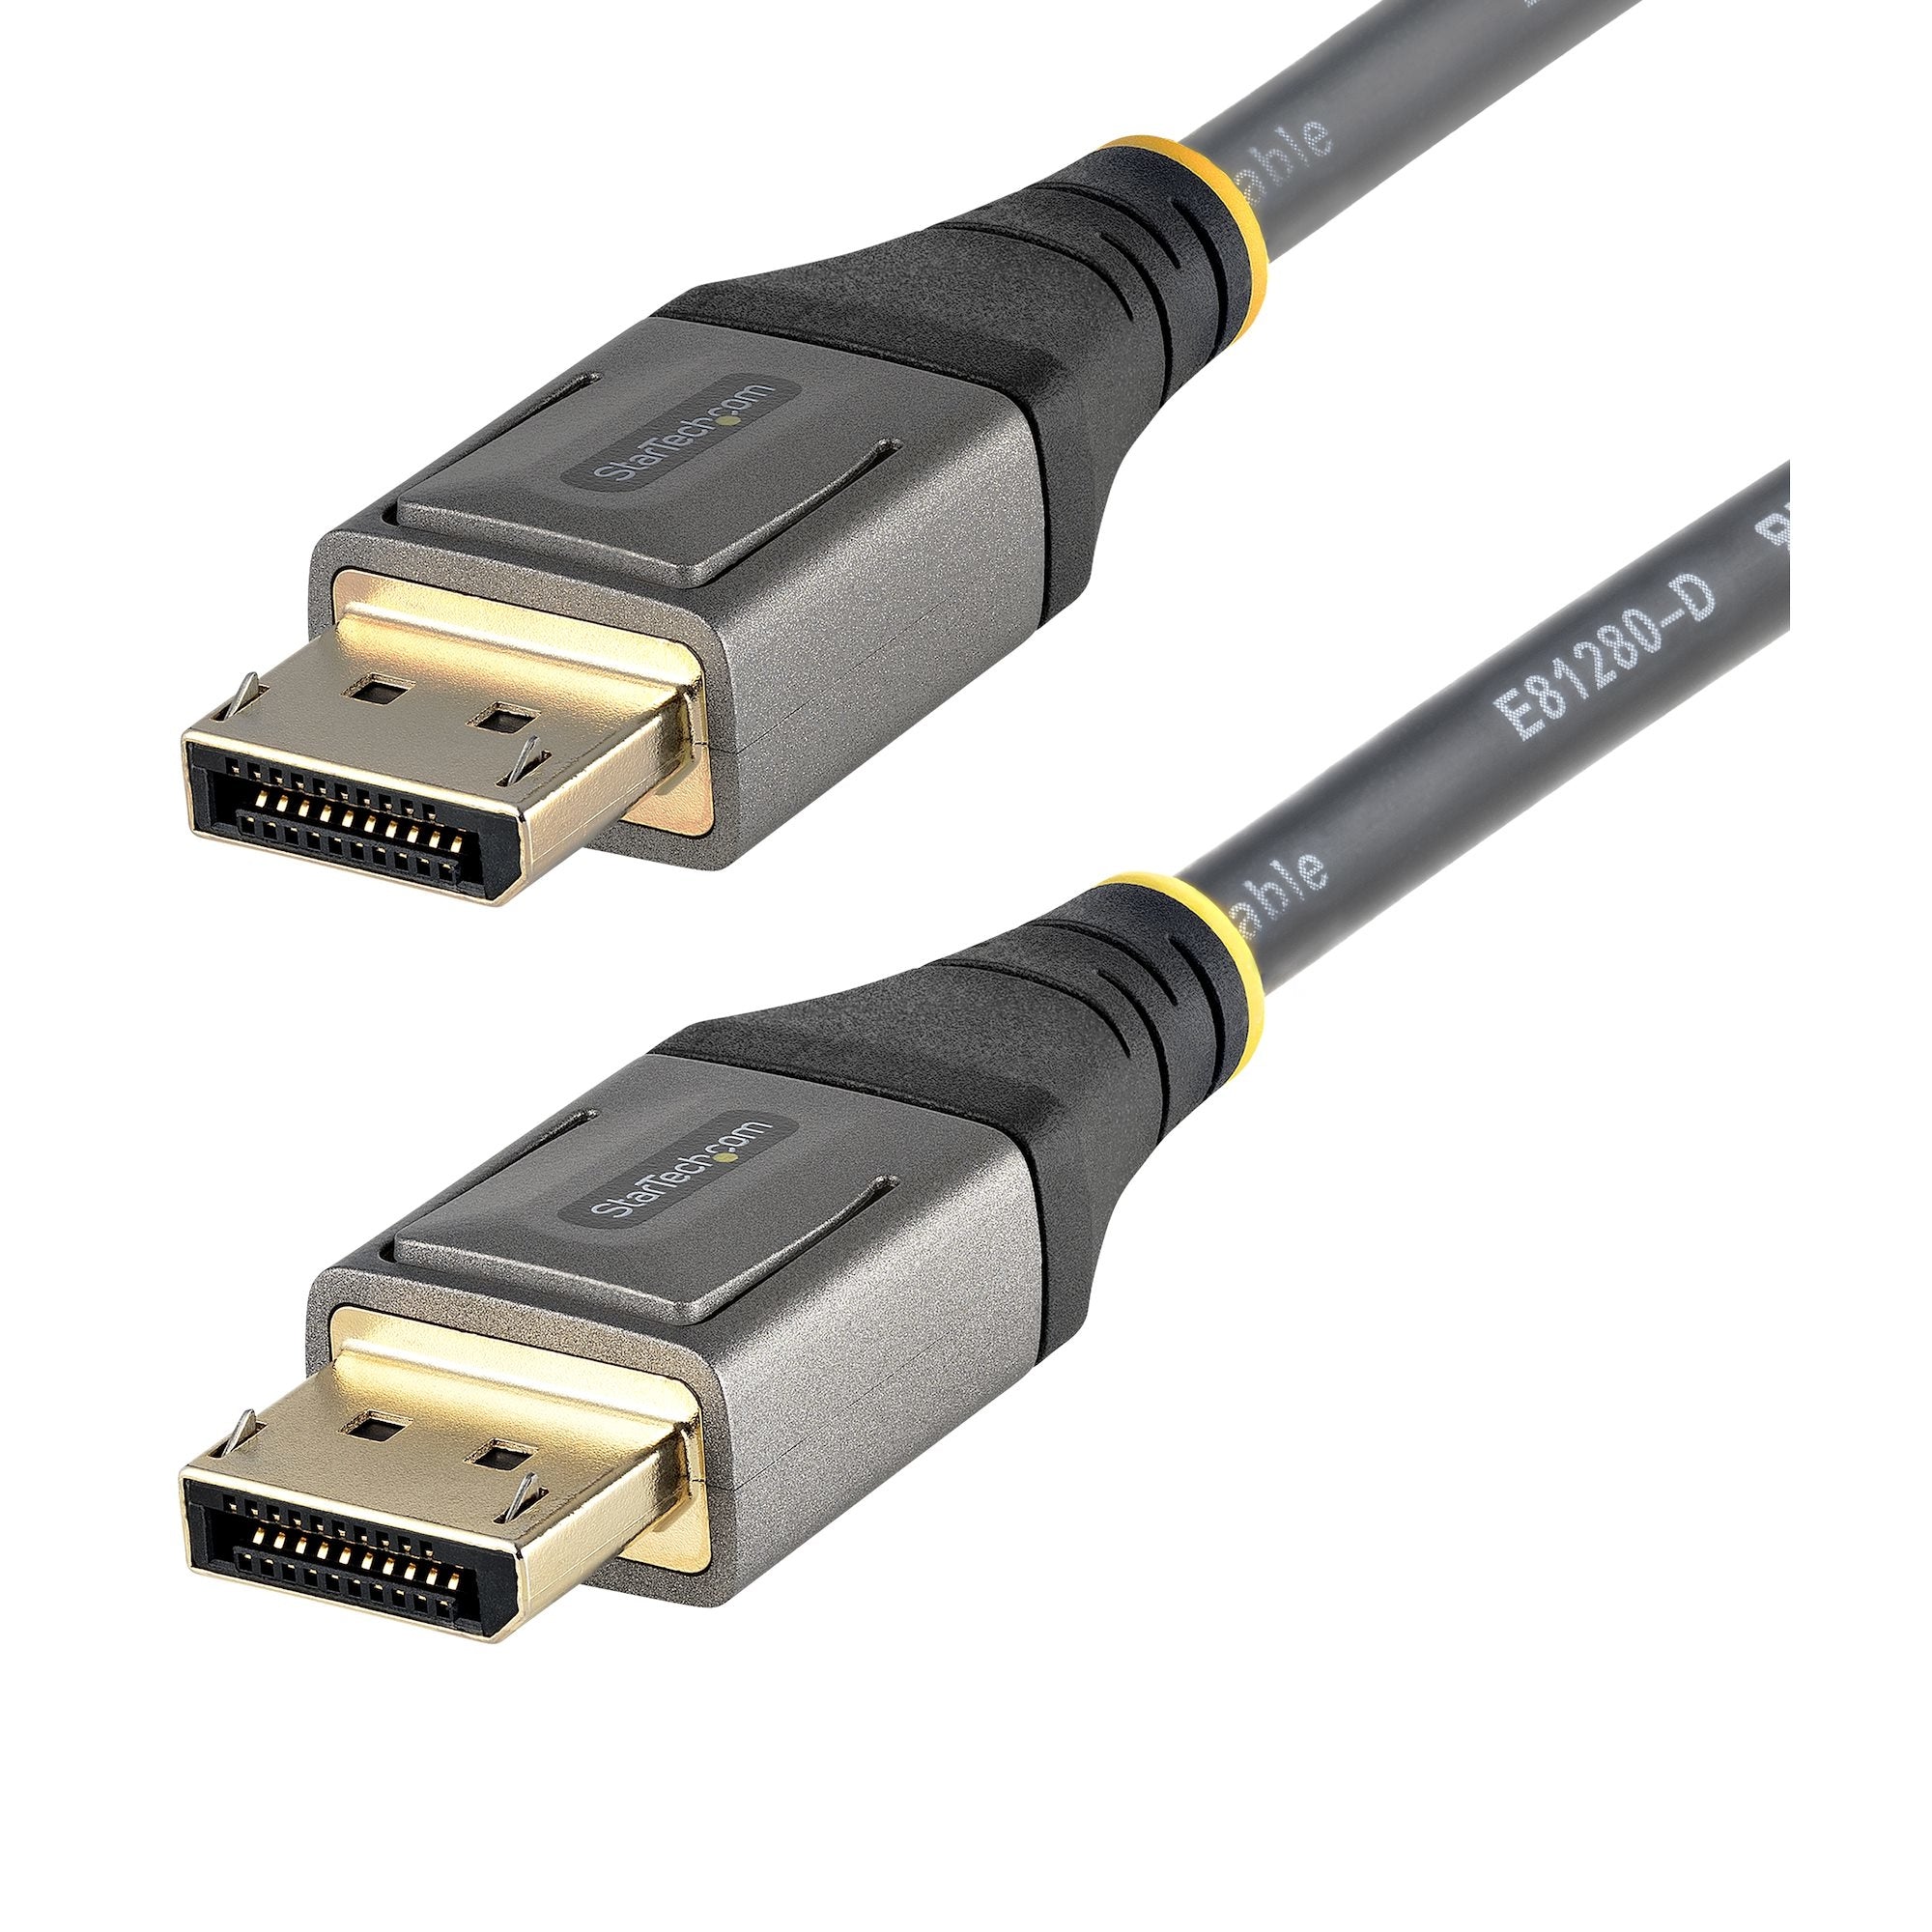 Cable De 2M Displayport 1.4 Certificado Por Vesa - Hdr10 8K 60Hz - Video Ultra Hd 4K 120Hz - Cable Dp 1.4 Para Monitores - Cable Displayport A Displayport - M/M - Startech.Com Mod. Dp14Vmm2M